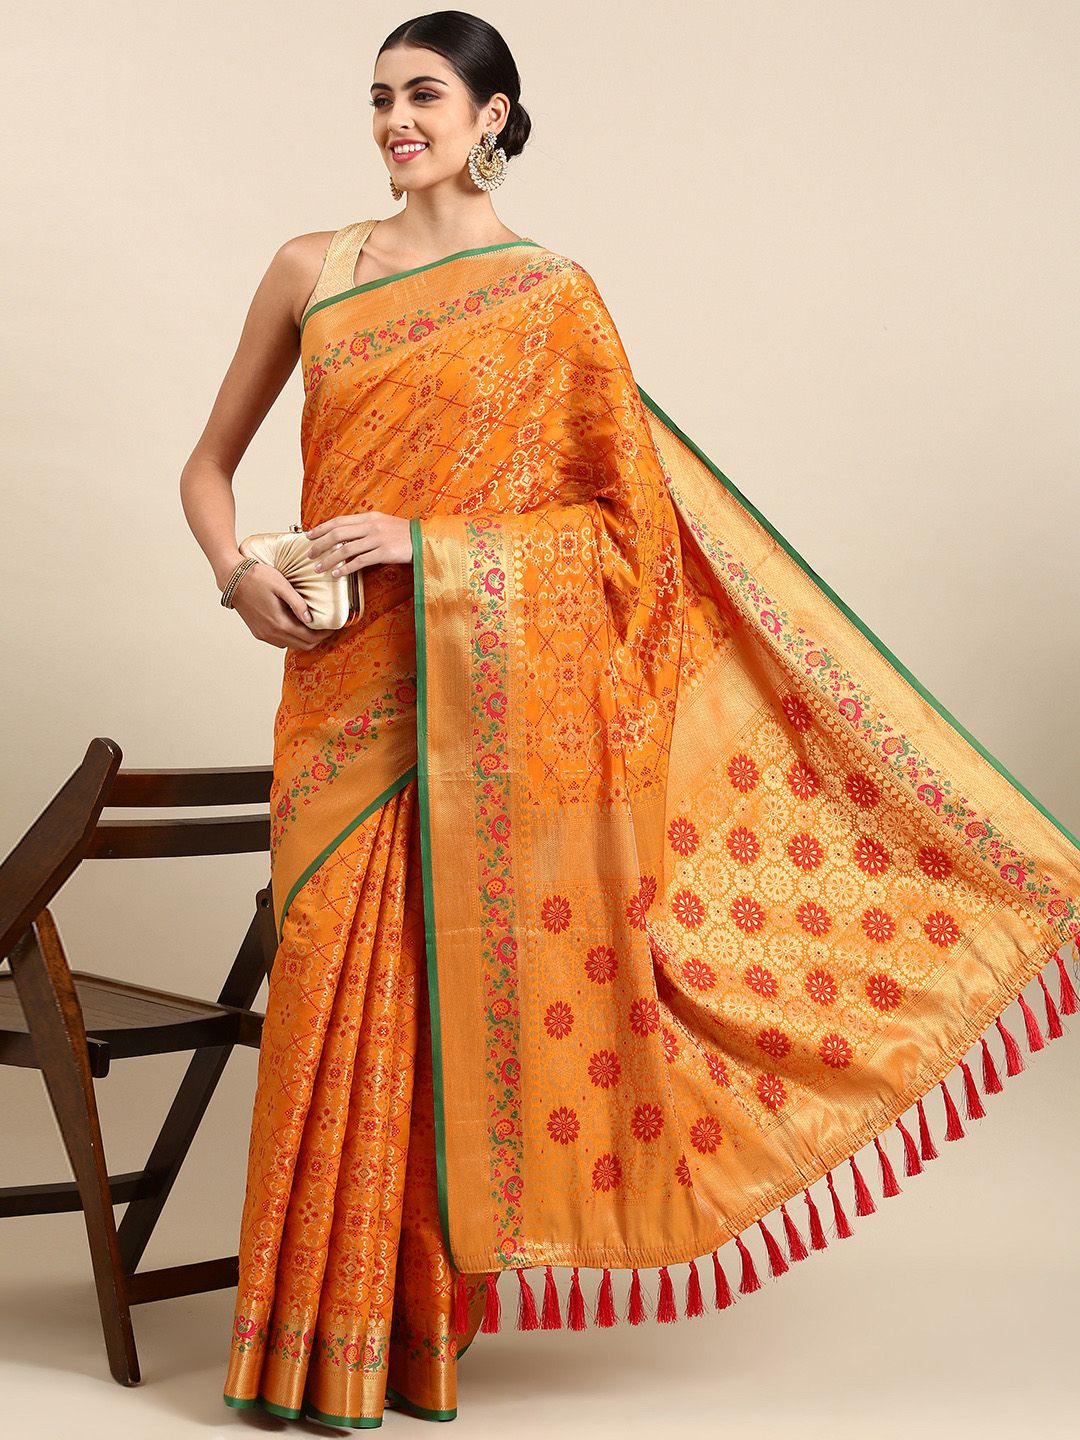 Mitera Ethnic Motifs Zari Silk Blend Banarasi Patola Saree Price in India